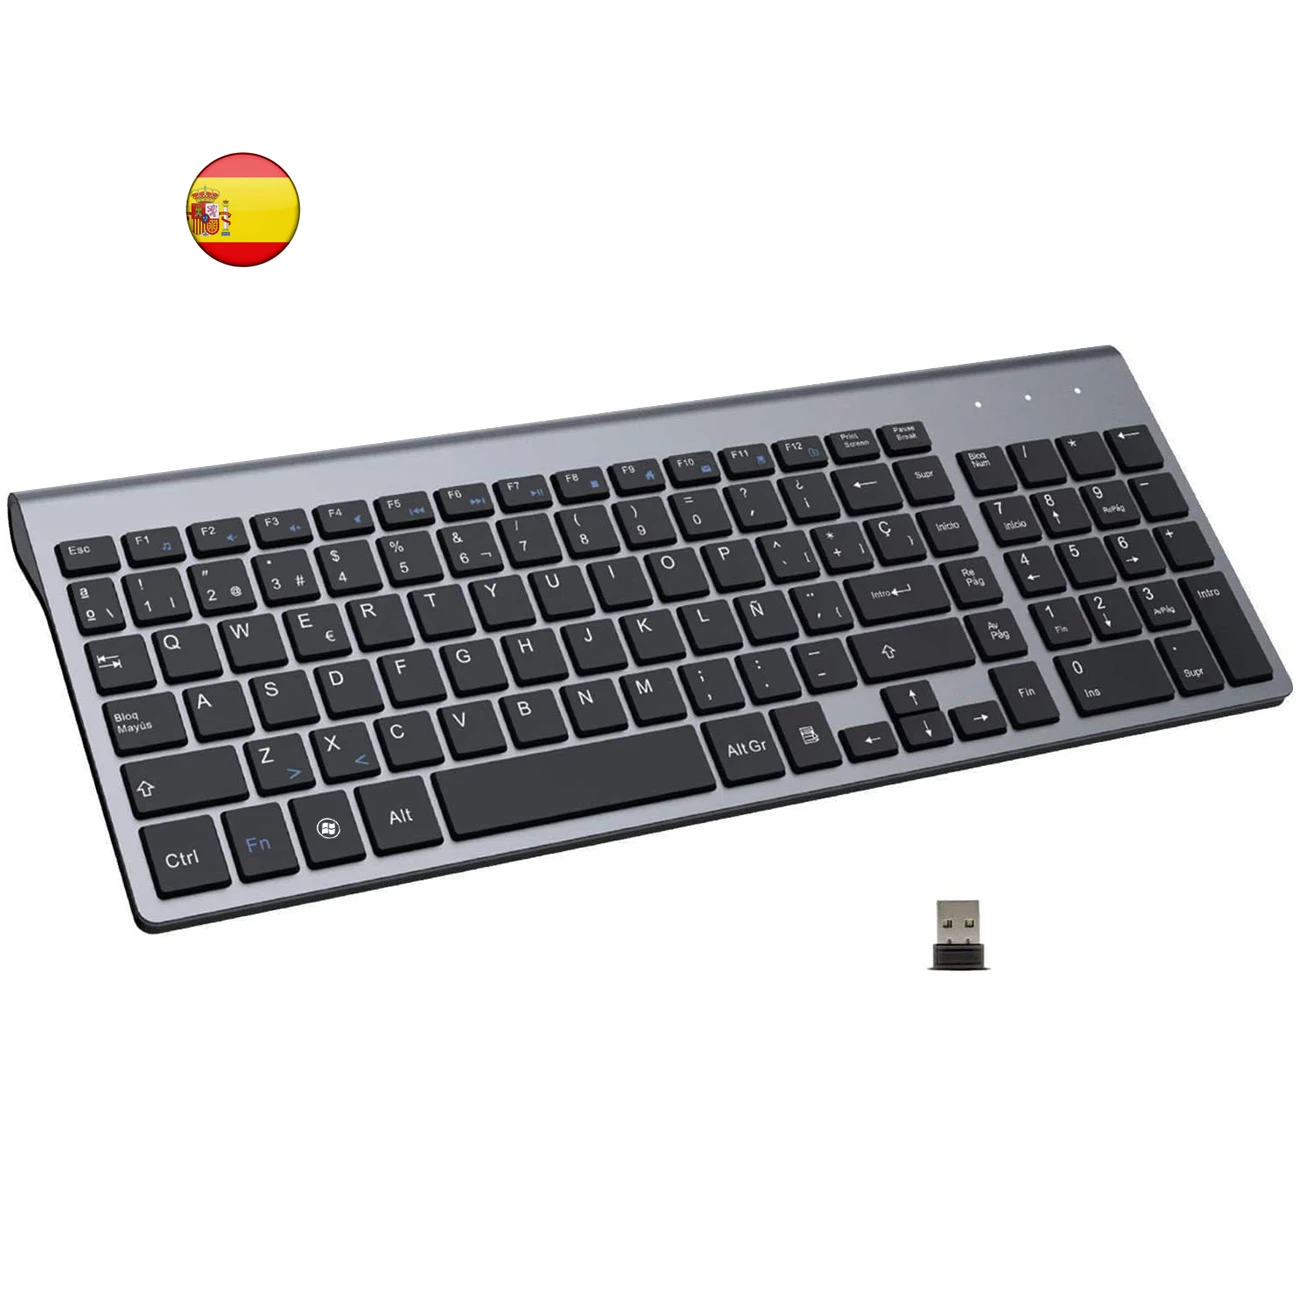 

Spanish Low Noise Slim Compact 101 Keys Wireless Keyboard 2.4G Wireless Teclado Keyboard for Laptop Windows PC Desktop Smart TV